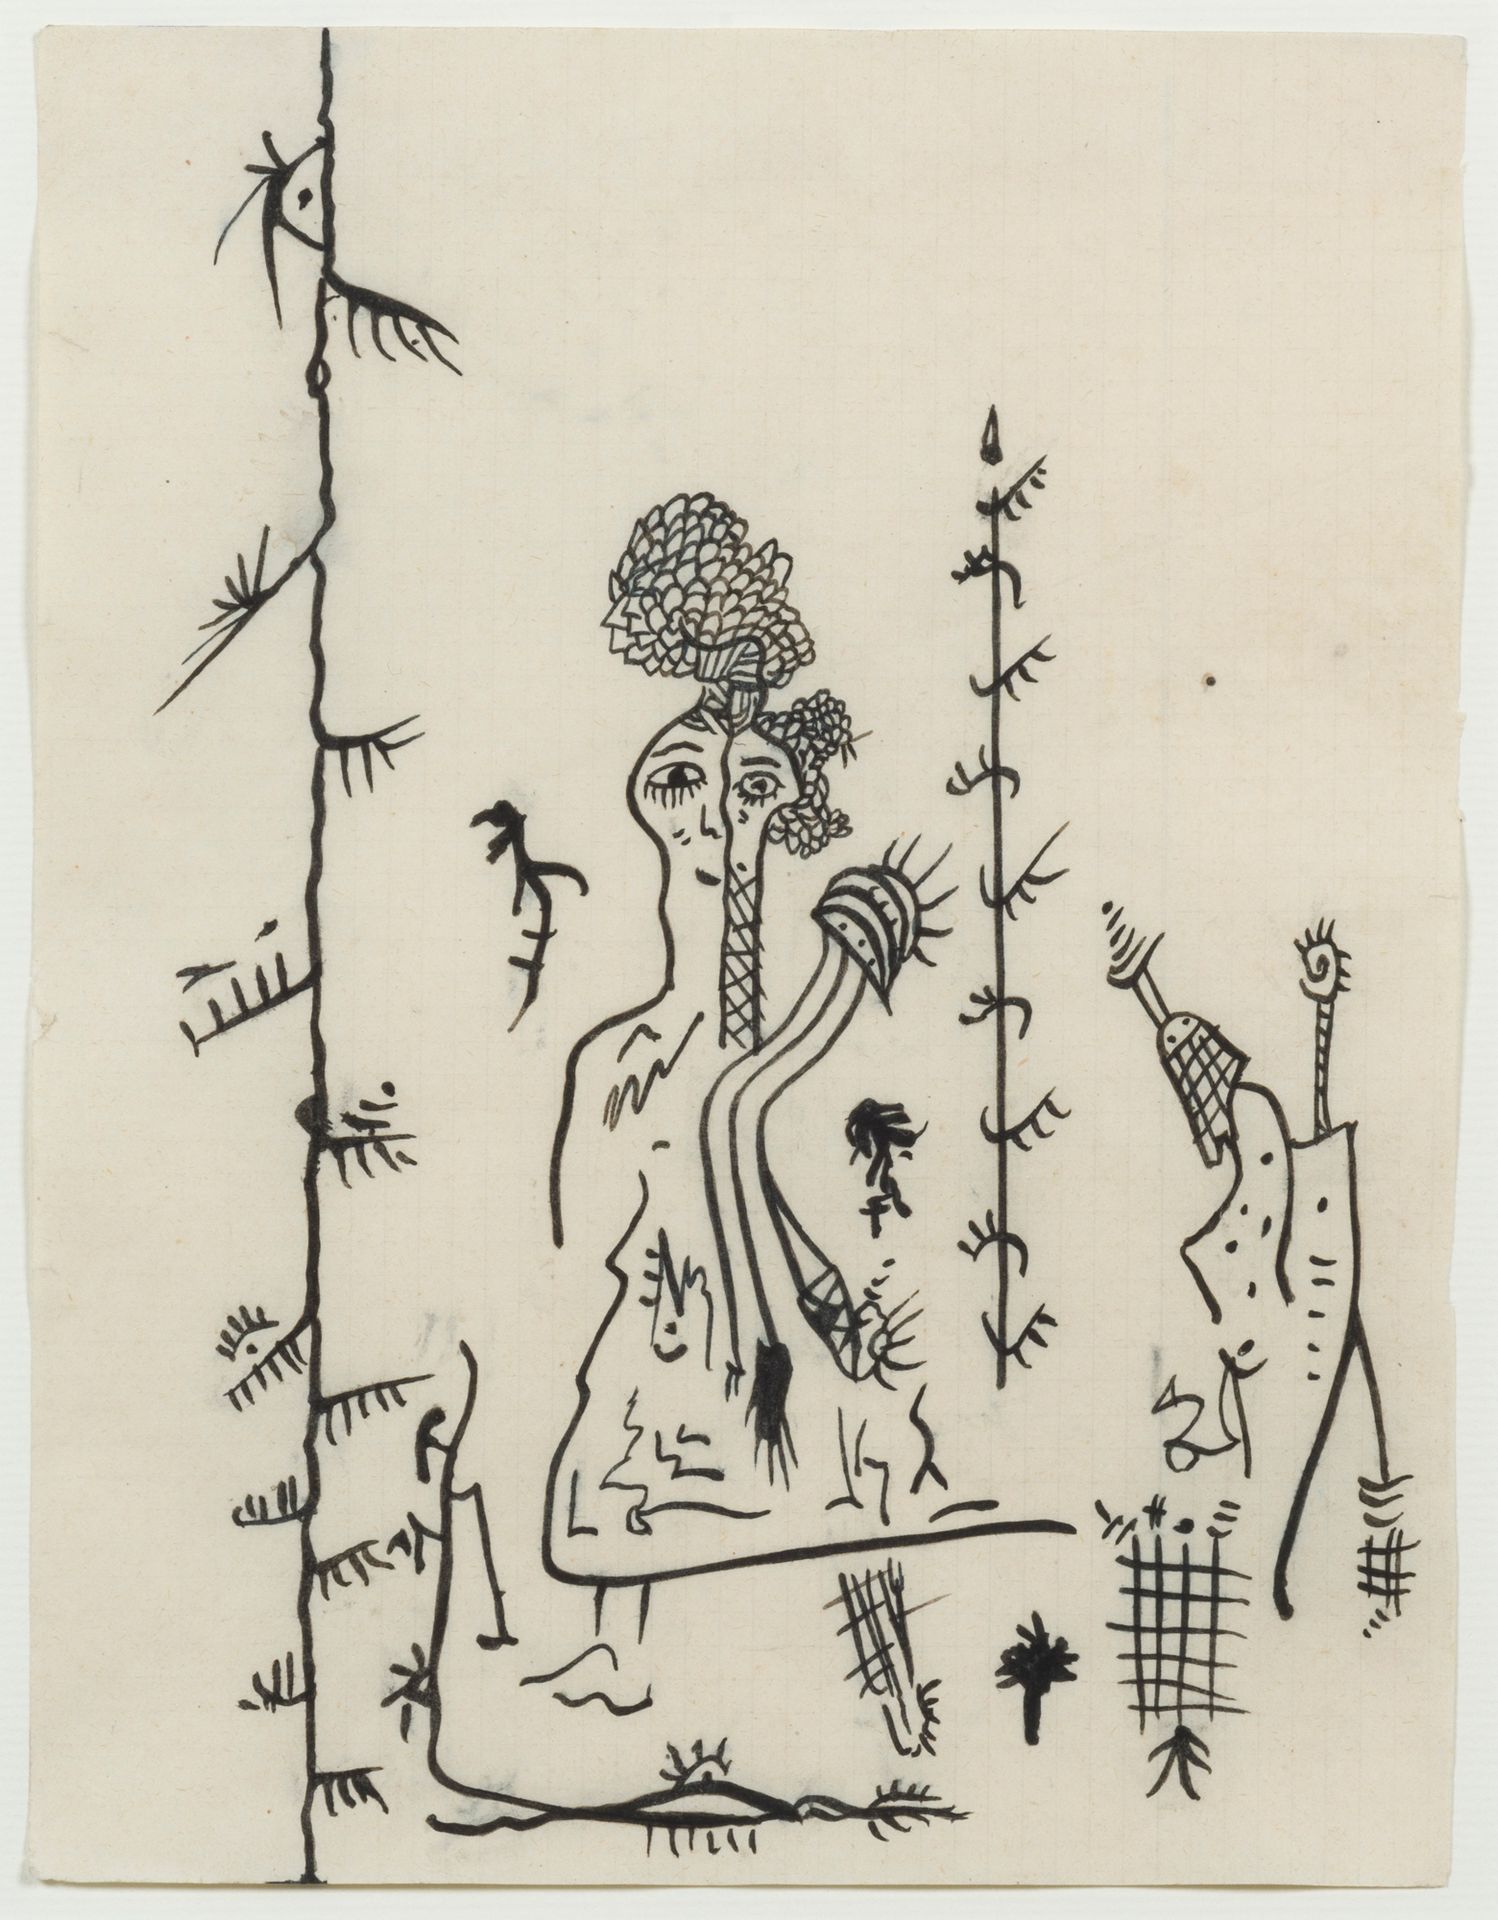 GASTON CHAISSAC (1910-64) Composición con figuras, 1945-46.
Tinta sobre papel.
E&hellip;